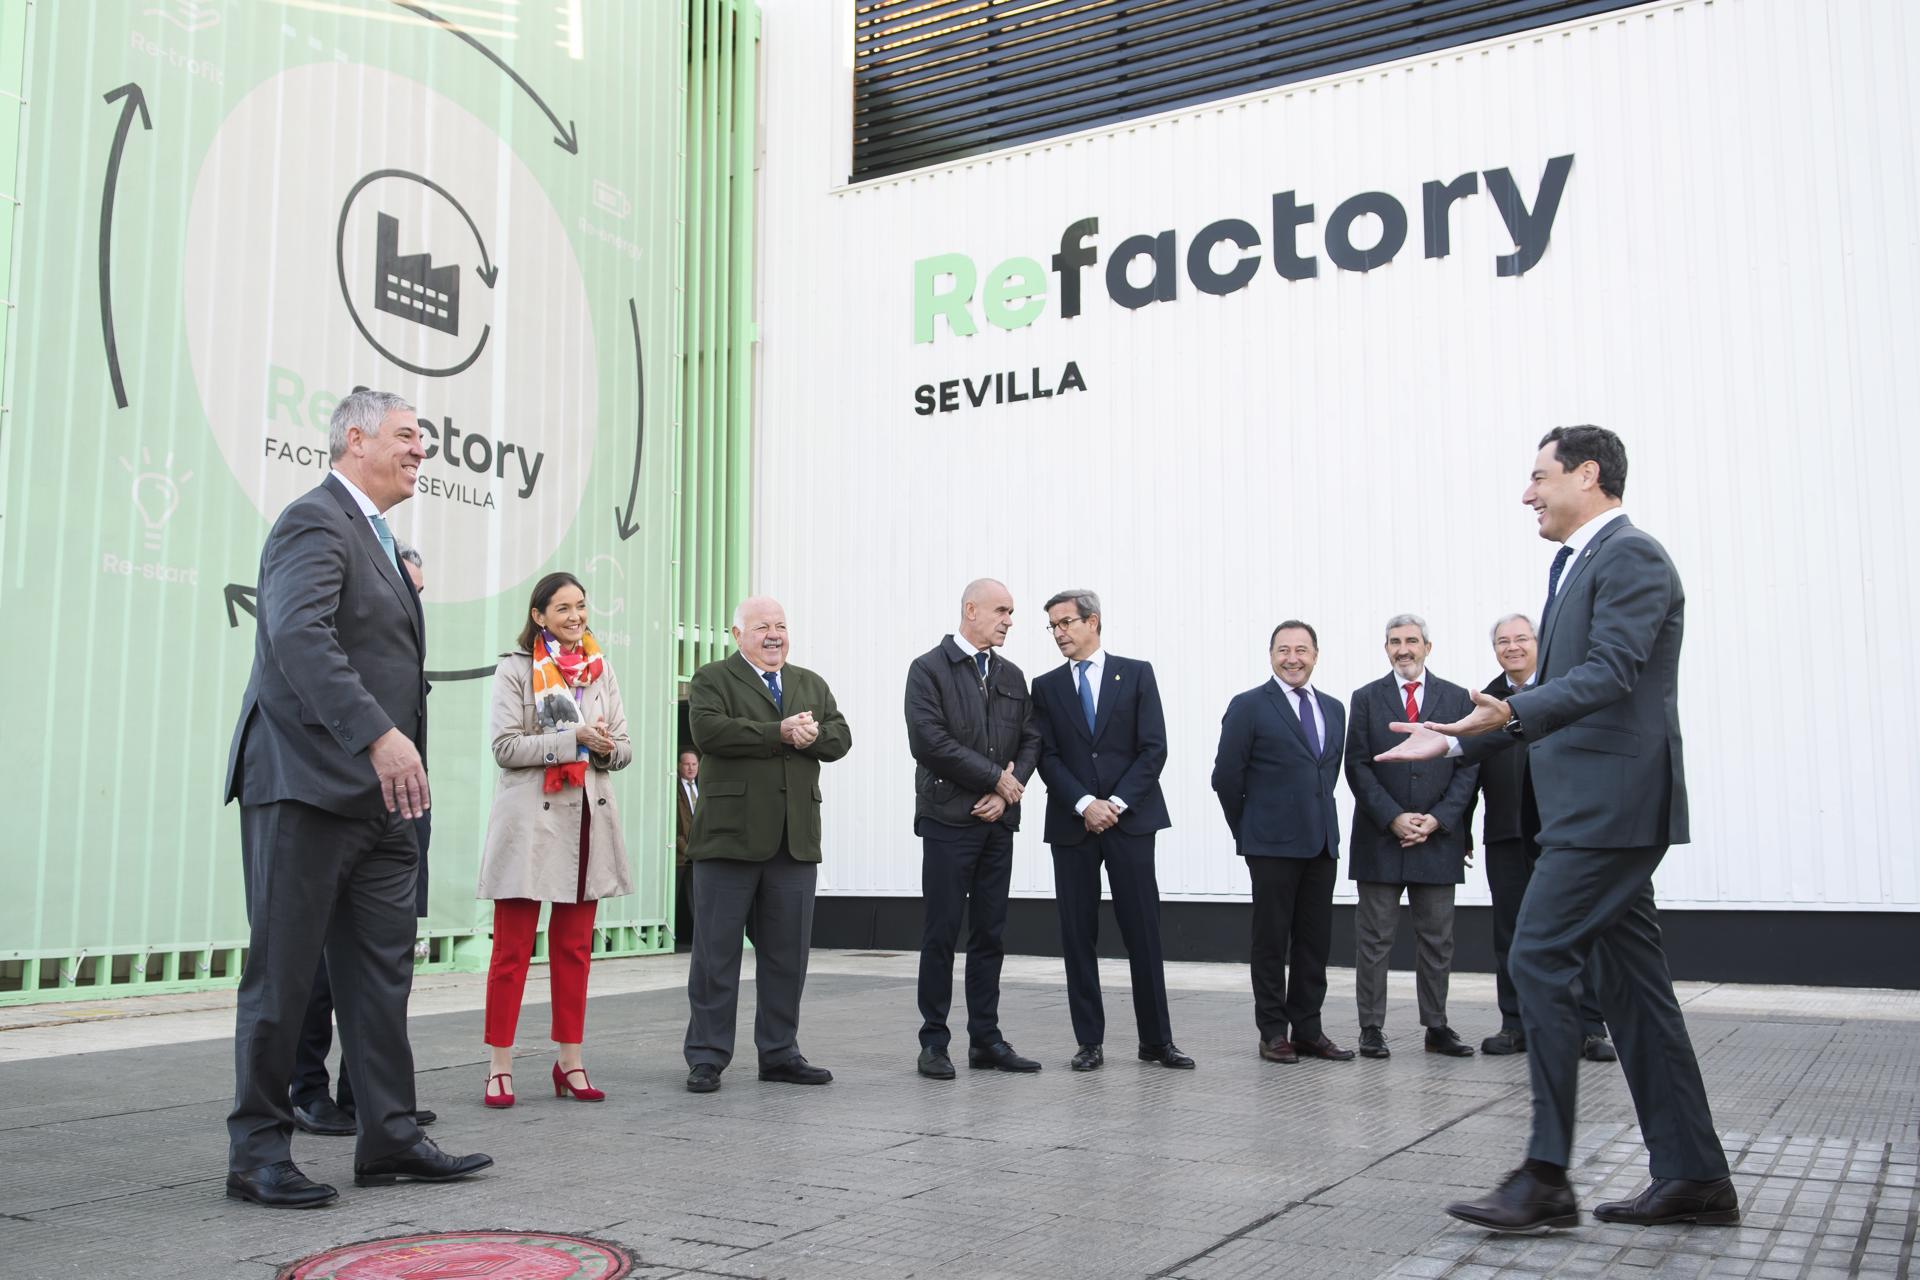 Renault allargarà la vida útil a més d'11.000 vehicles a l'any, a la factoria de Sevilla